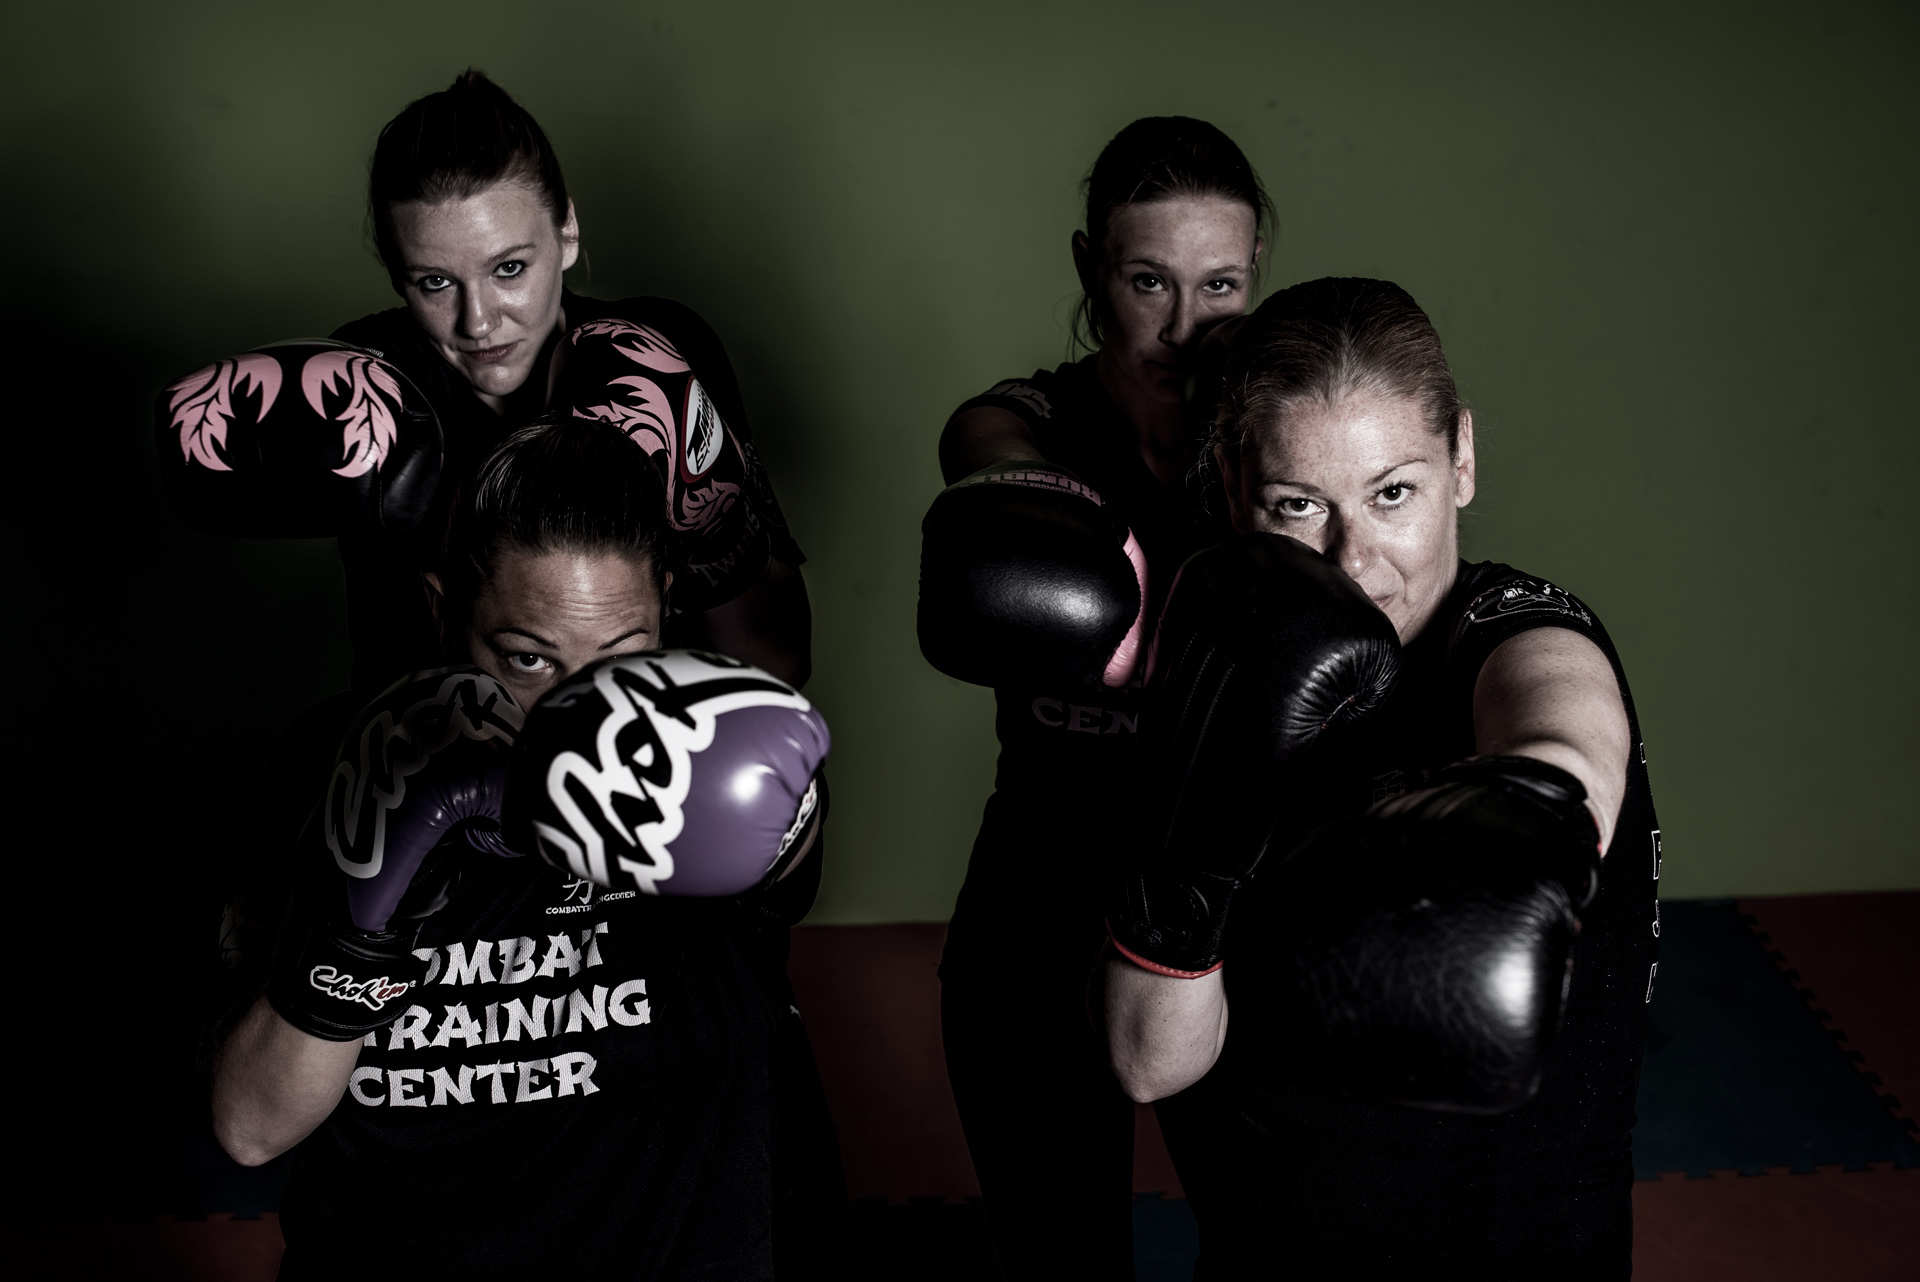 Kickboksen voor vrouwen - Combat Training